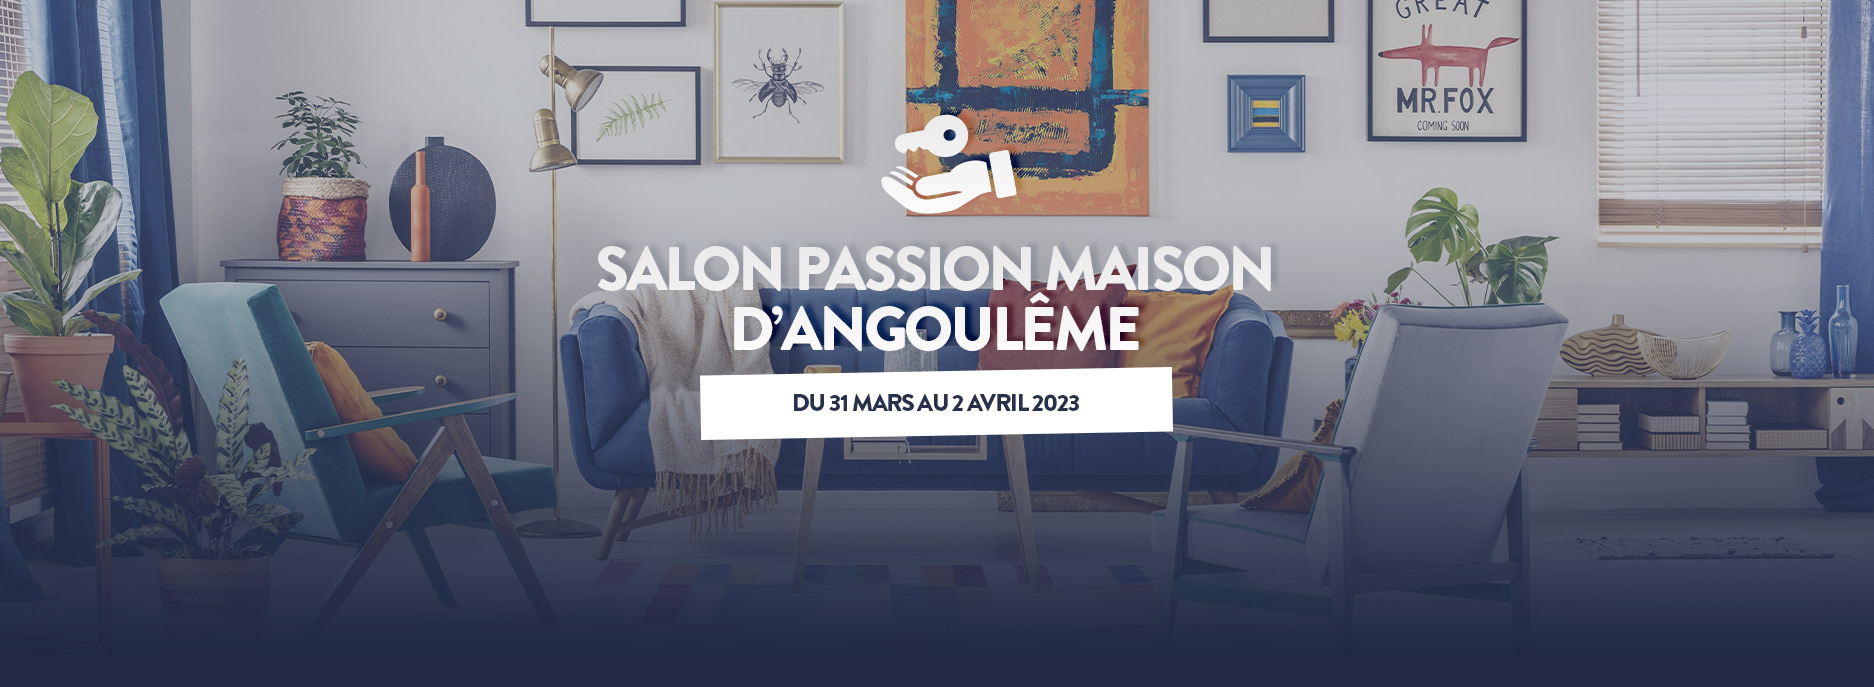 Salon Passion Maison d'Angoulême du 31 mars au 2 avril